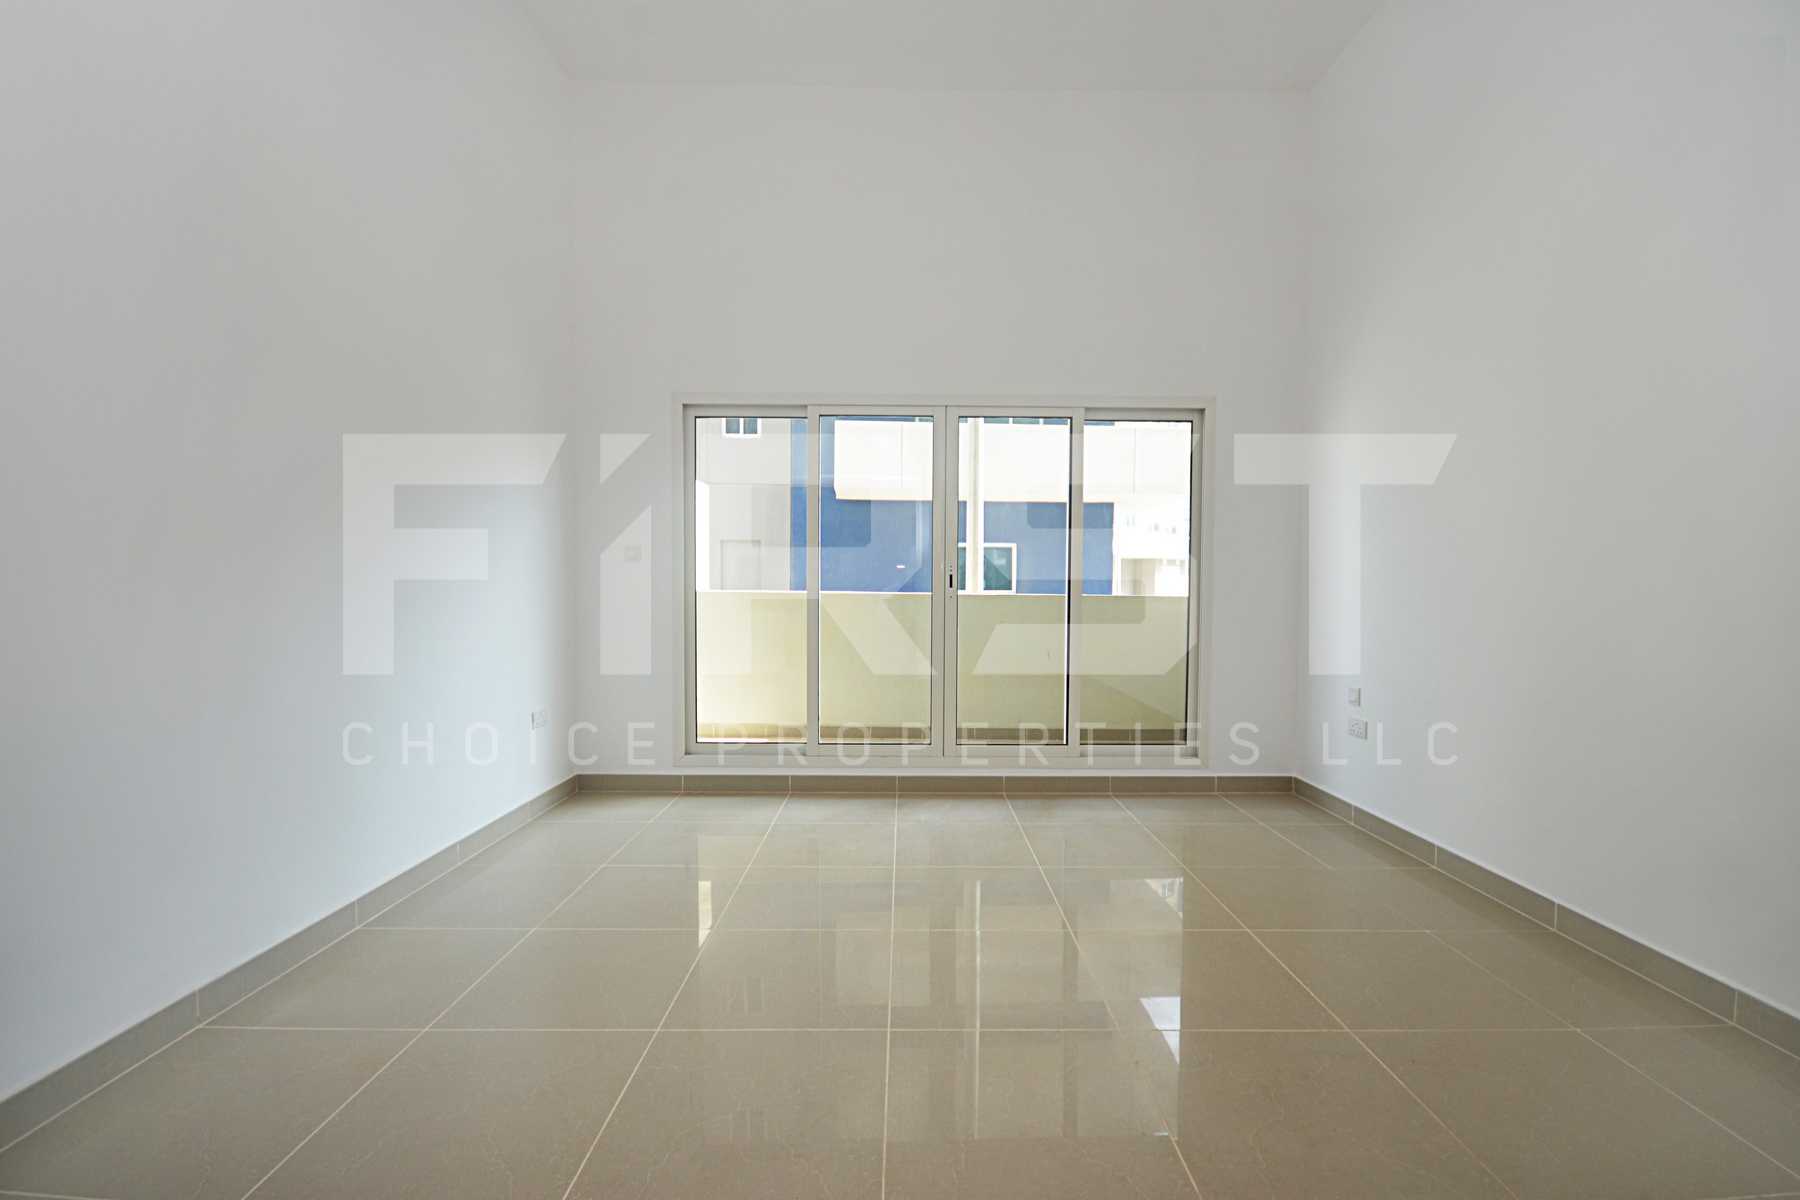 Internal Photo of Studio Apartment Type C-Ground Floor in Al Reef Downtown Al Reef AUH UAE 46 sq.m 498 sq (.jpg